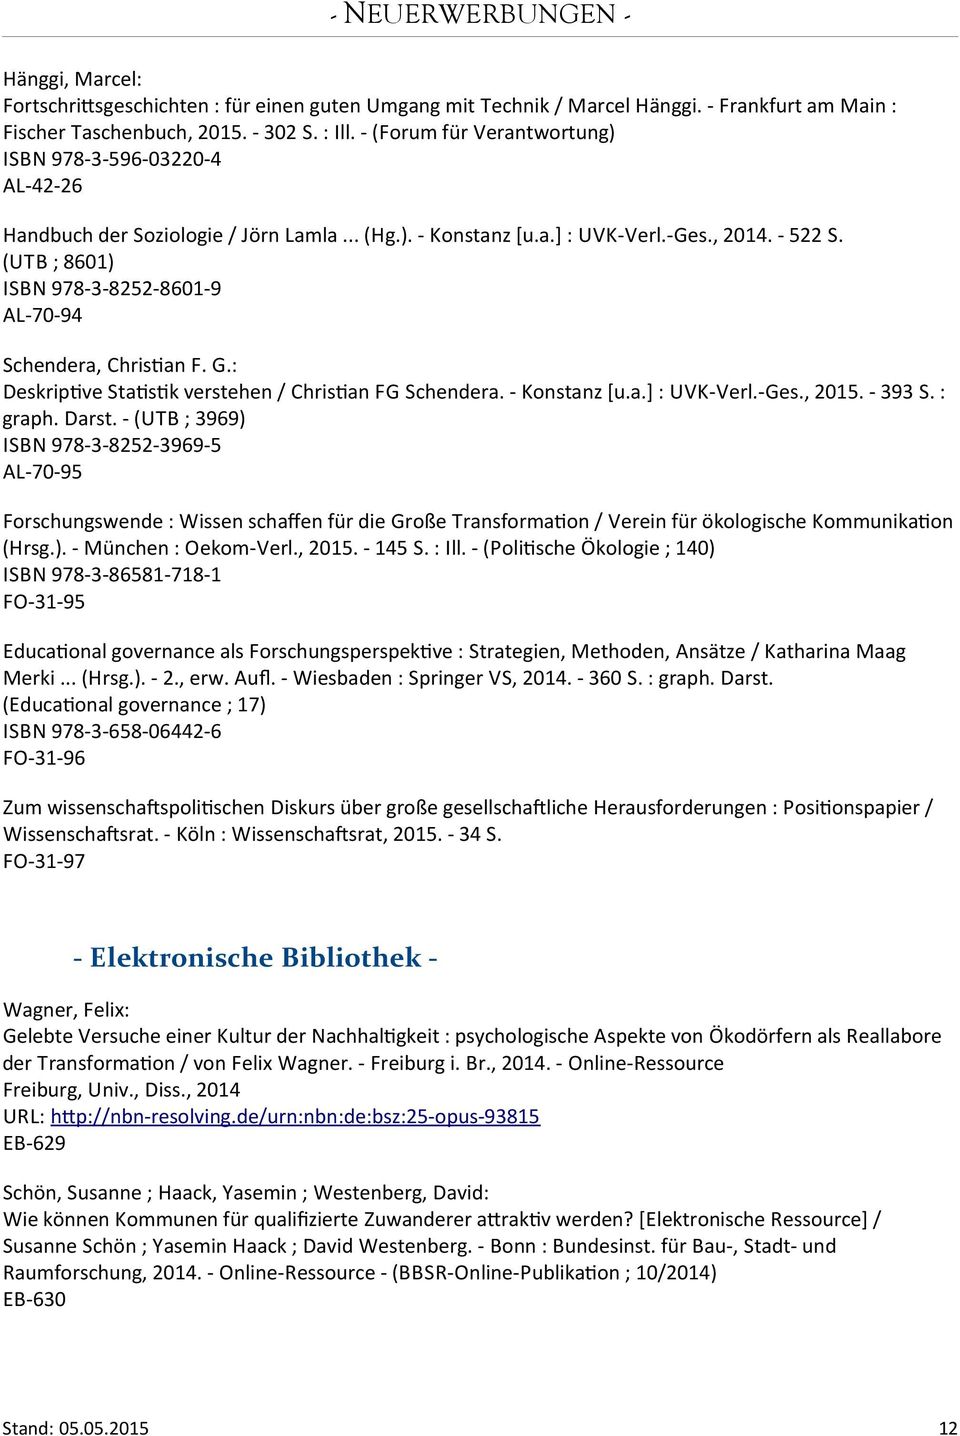 (UTB ; 8601) ISBN 978-3-8252-8601-9 AL-70-94 Schendera, Christan F. G.: Deskriptve Statstk verstehen / Christan FG Schendera. - Konstanz [u.a.] : UVK-Verl.-Ges., 2015. - 393 S. : graph. Darst.